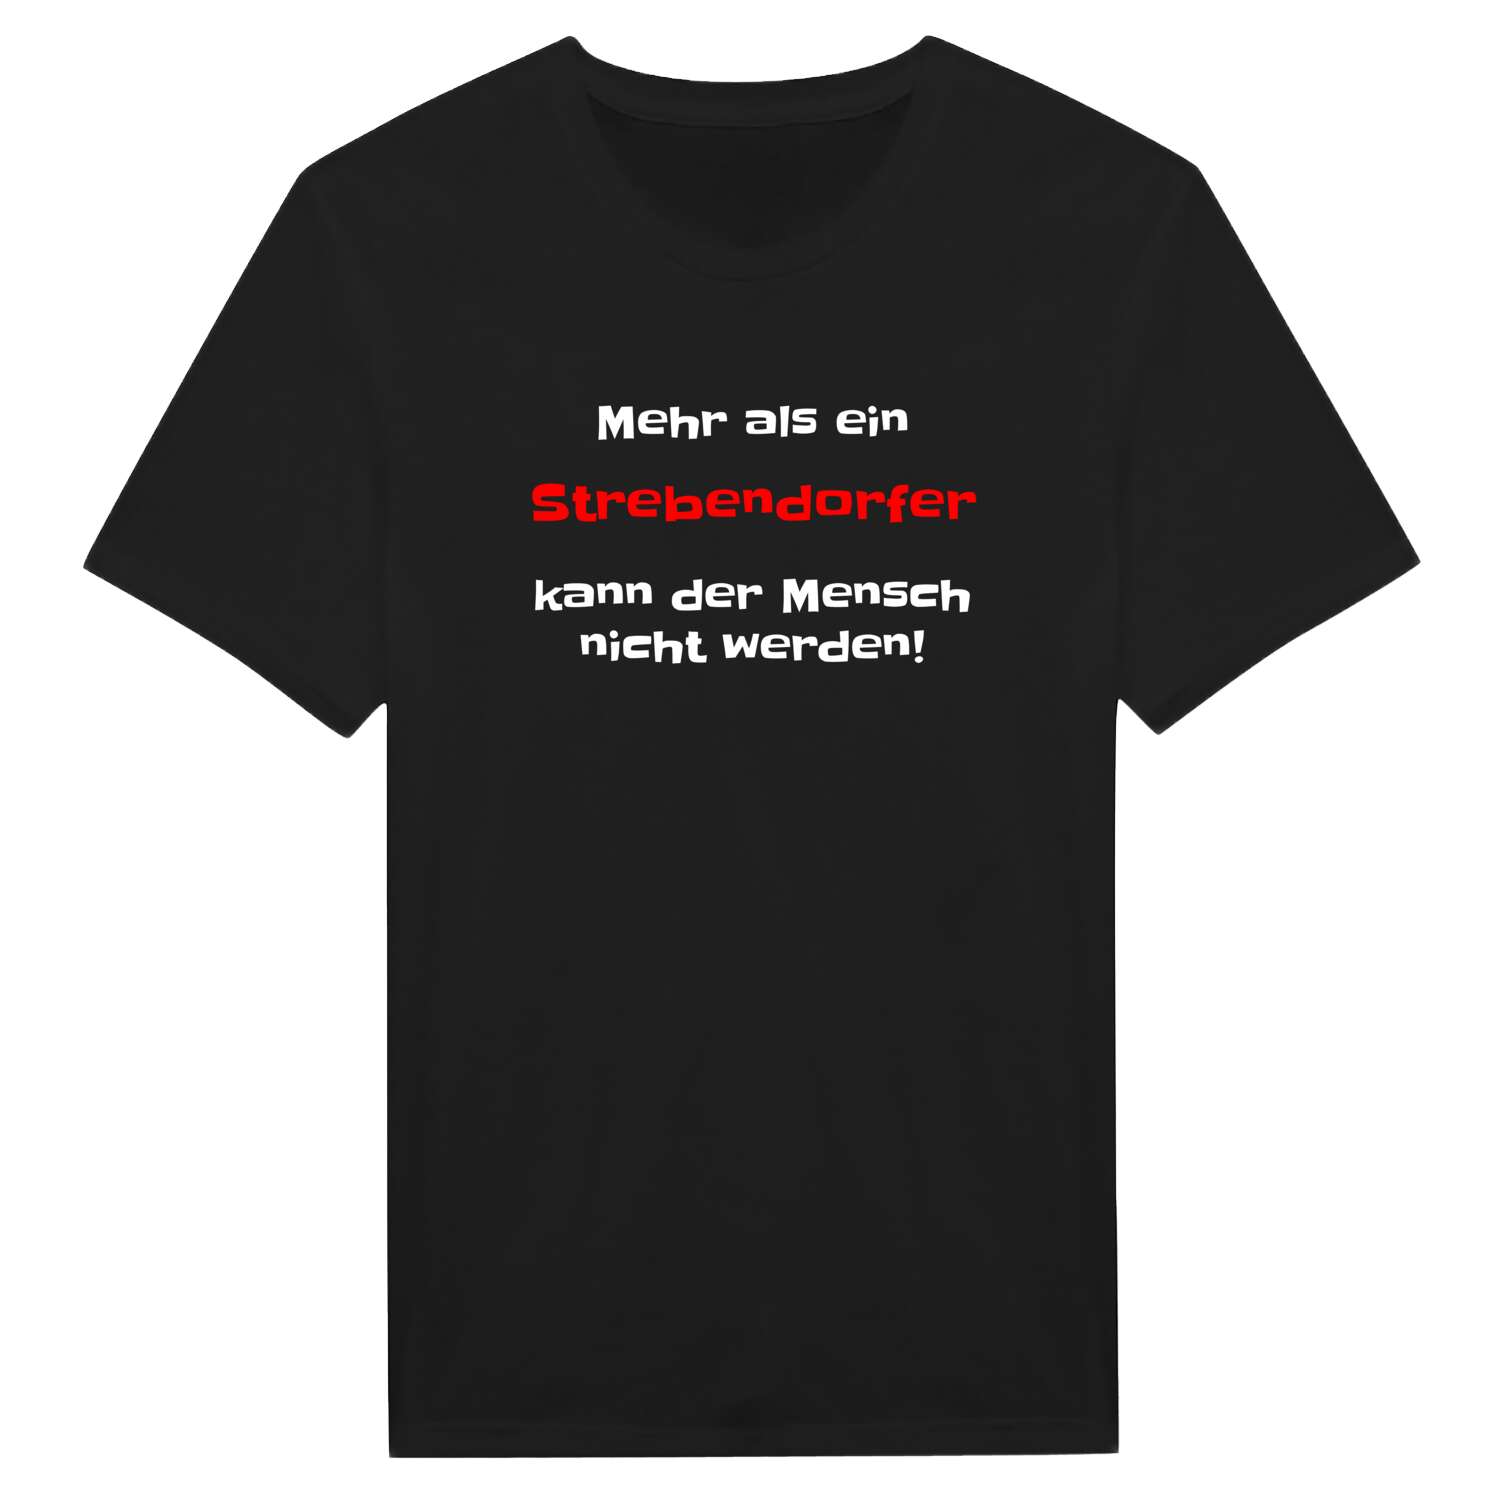 Strebendorf T-Shirt »Mehr als ein«